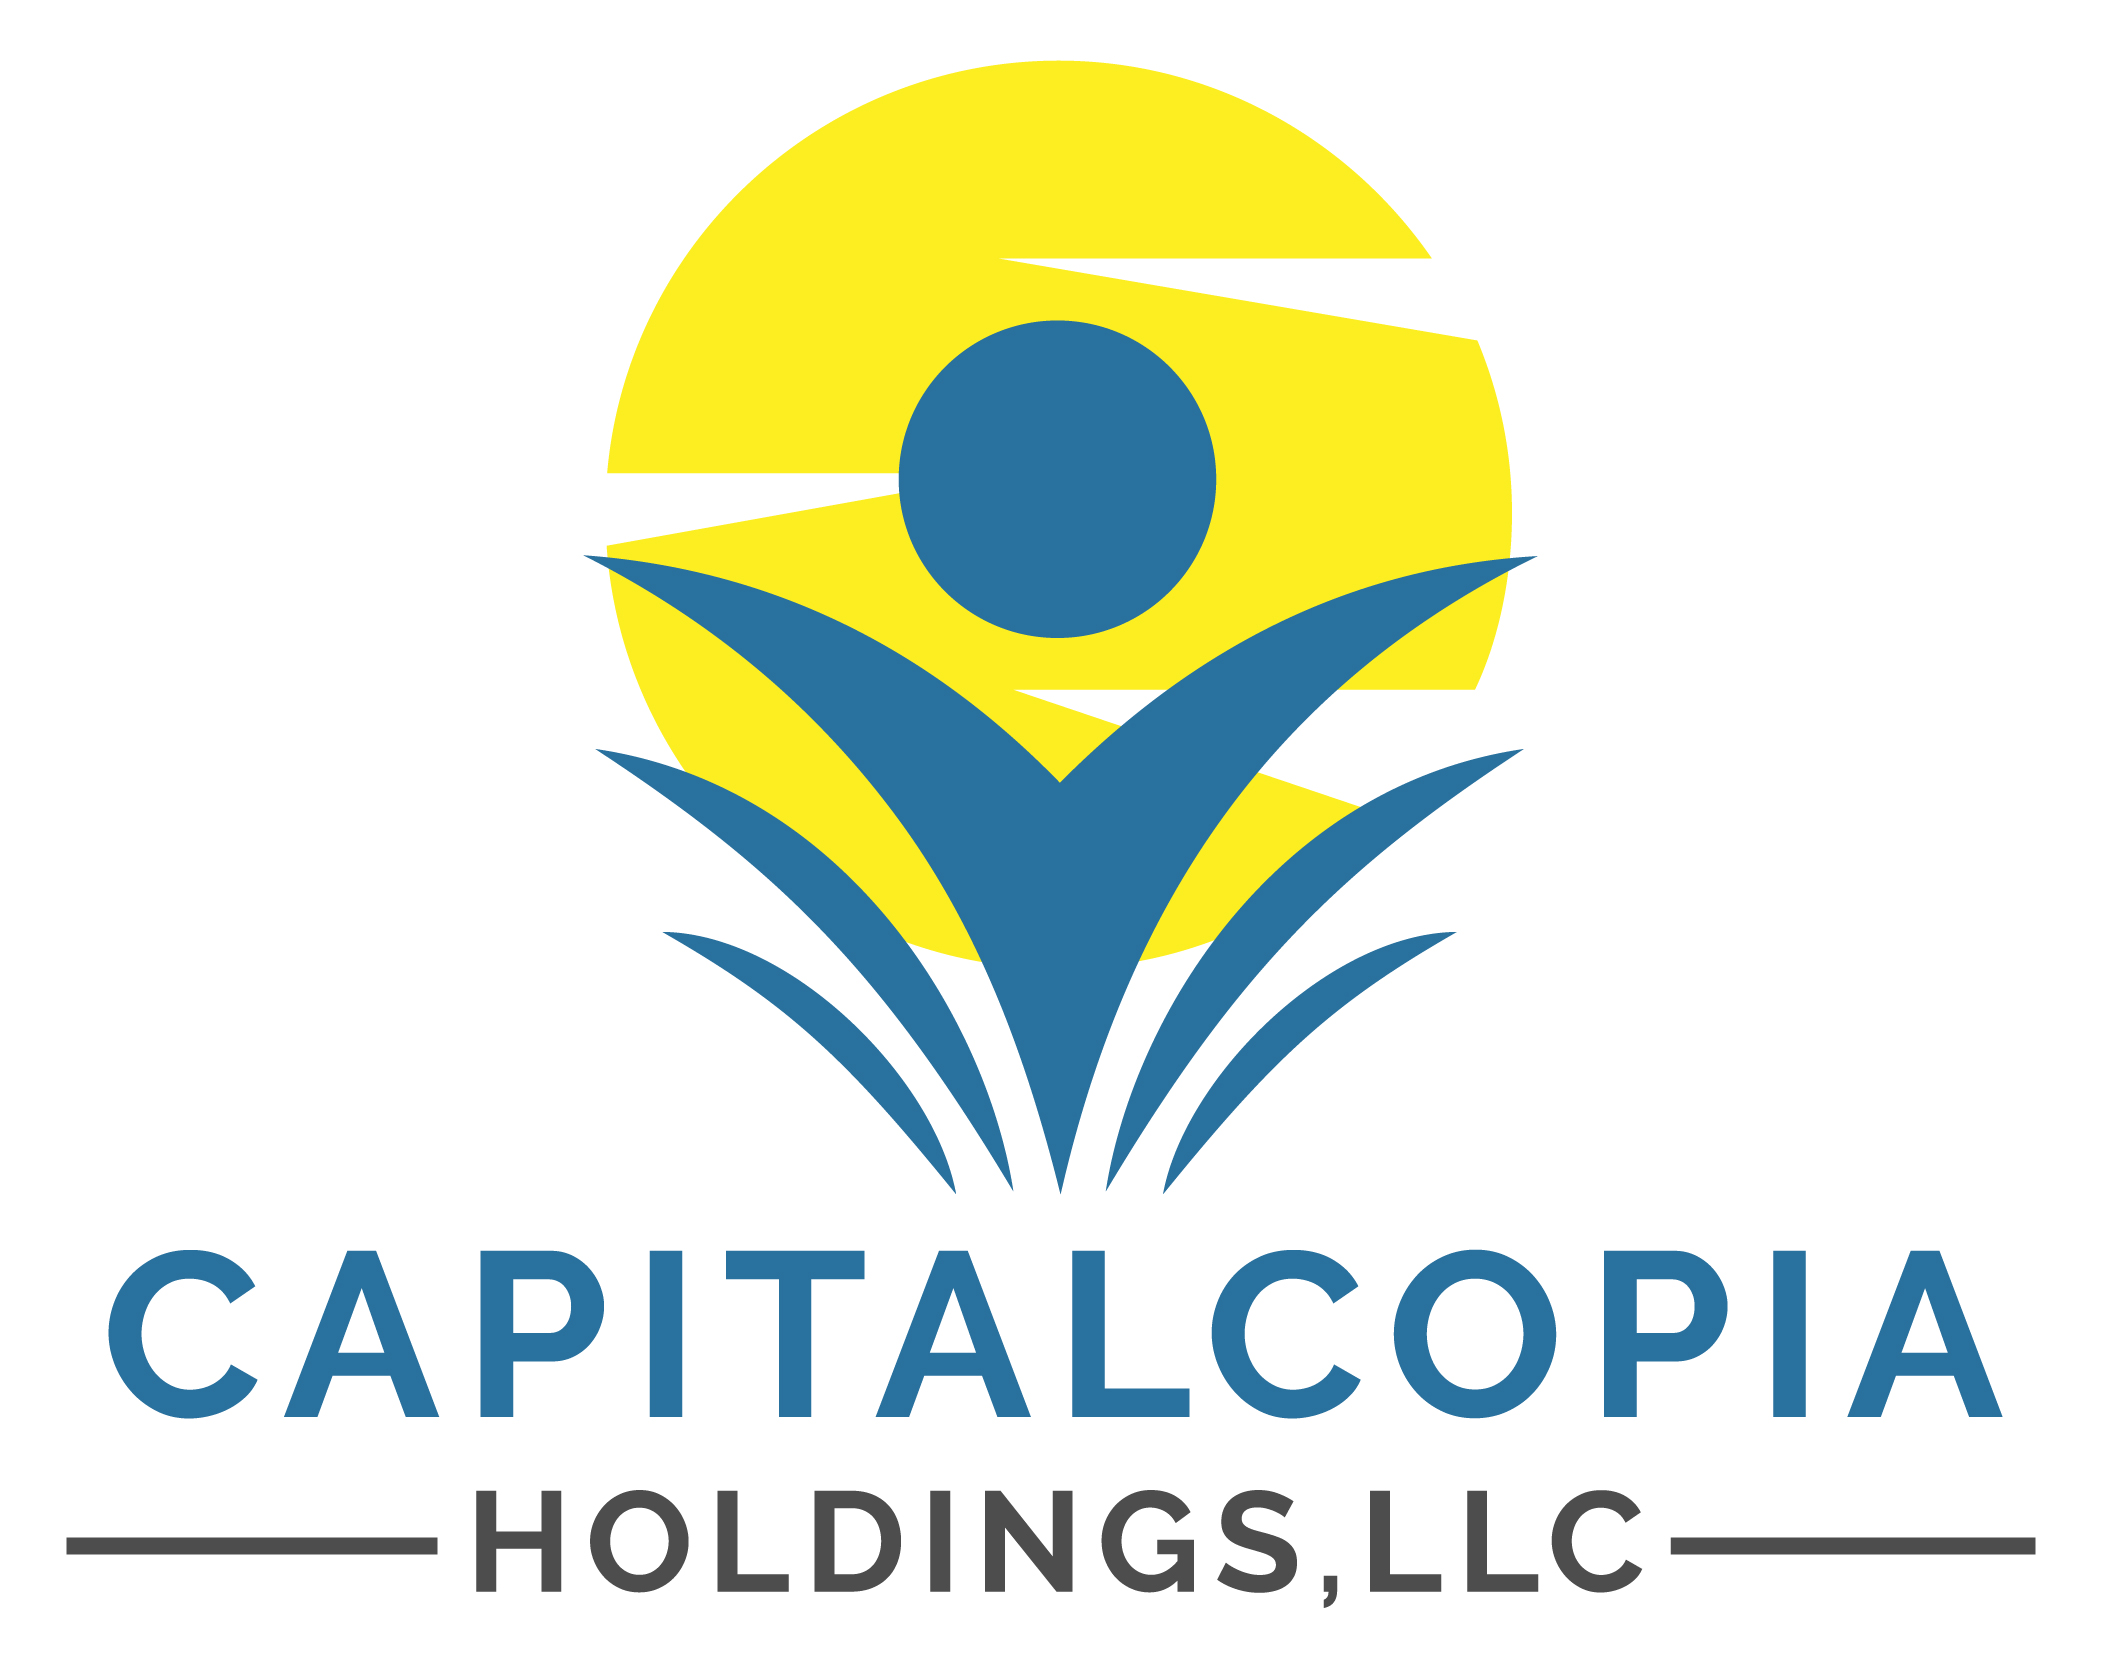 Capitalcopia Holdings,LLC